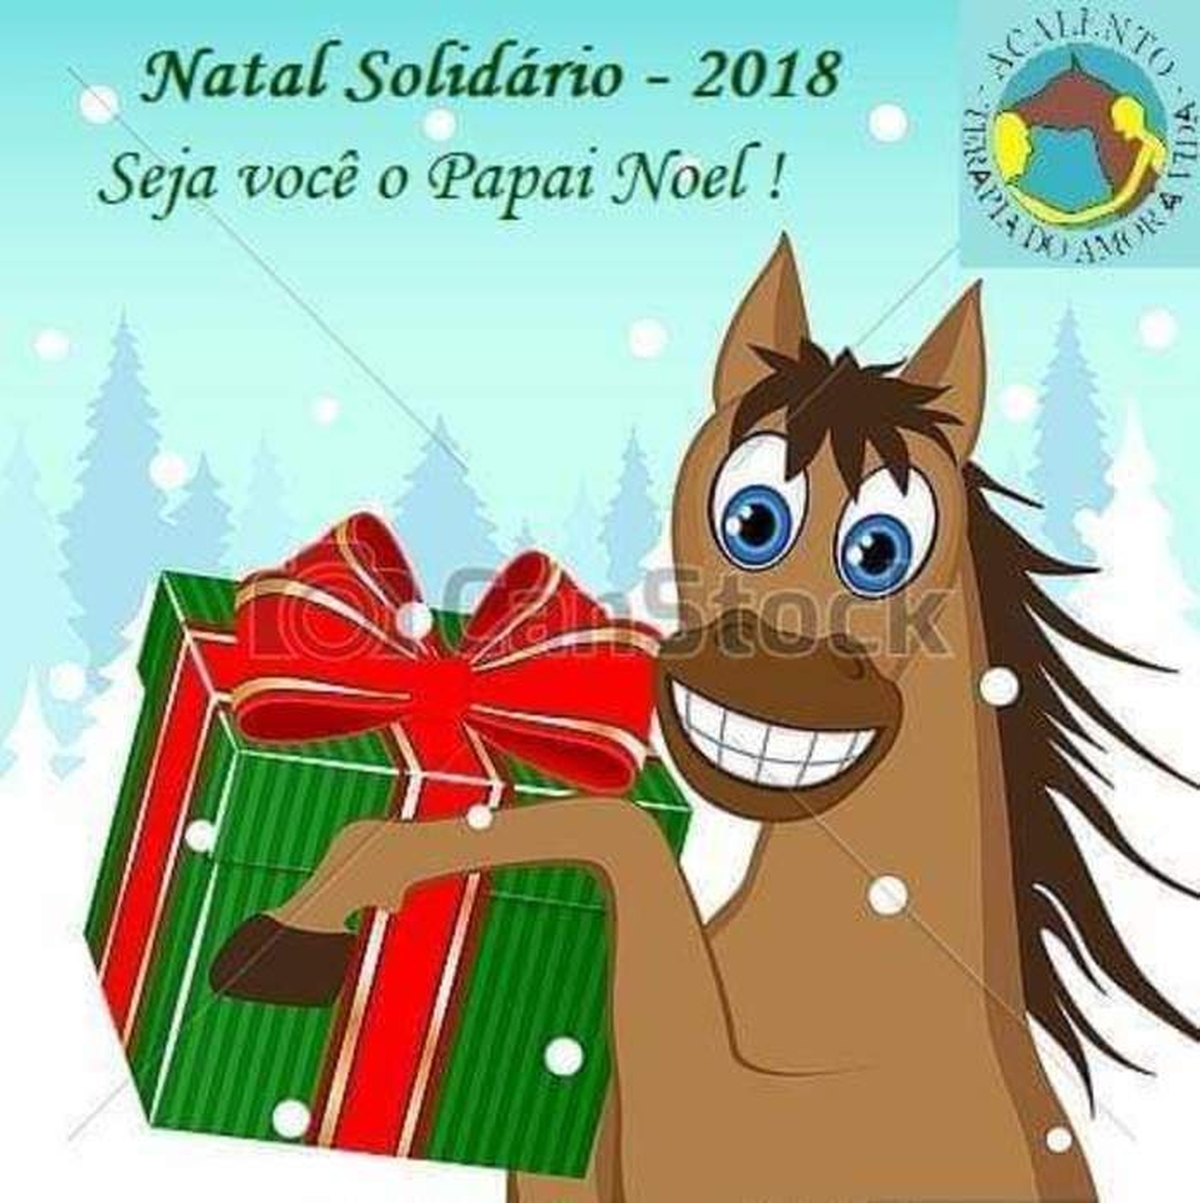 Natal Solidario 2018 - Acalento